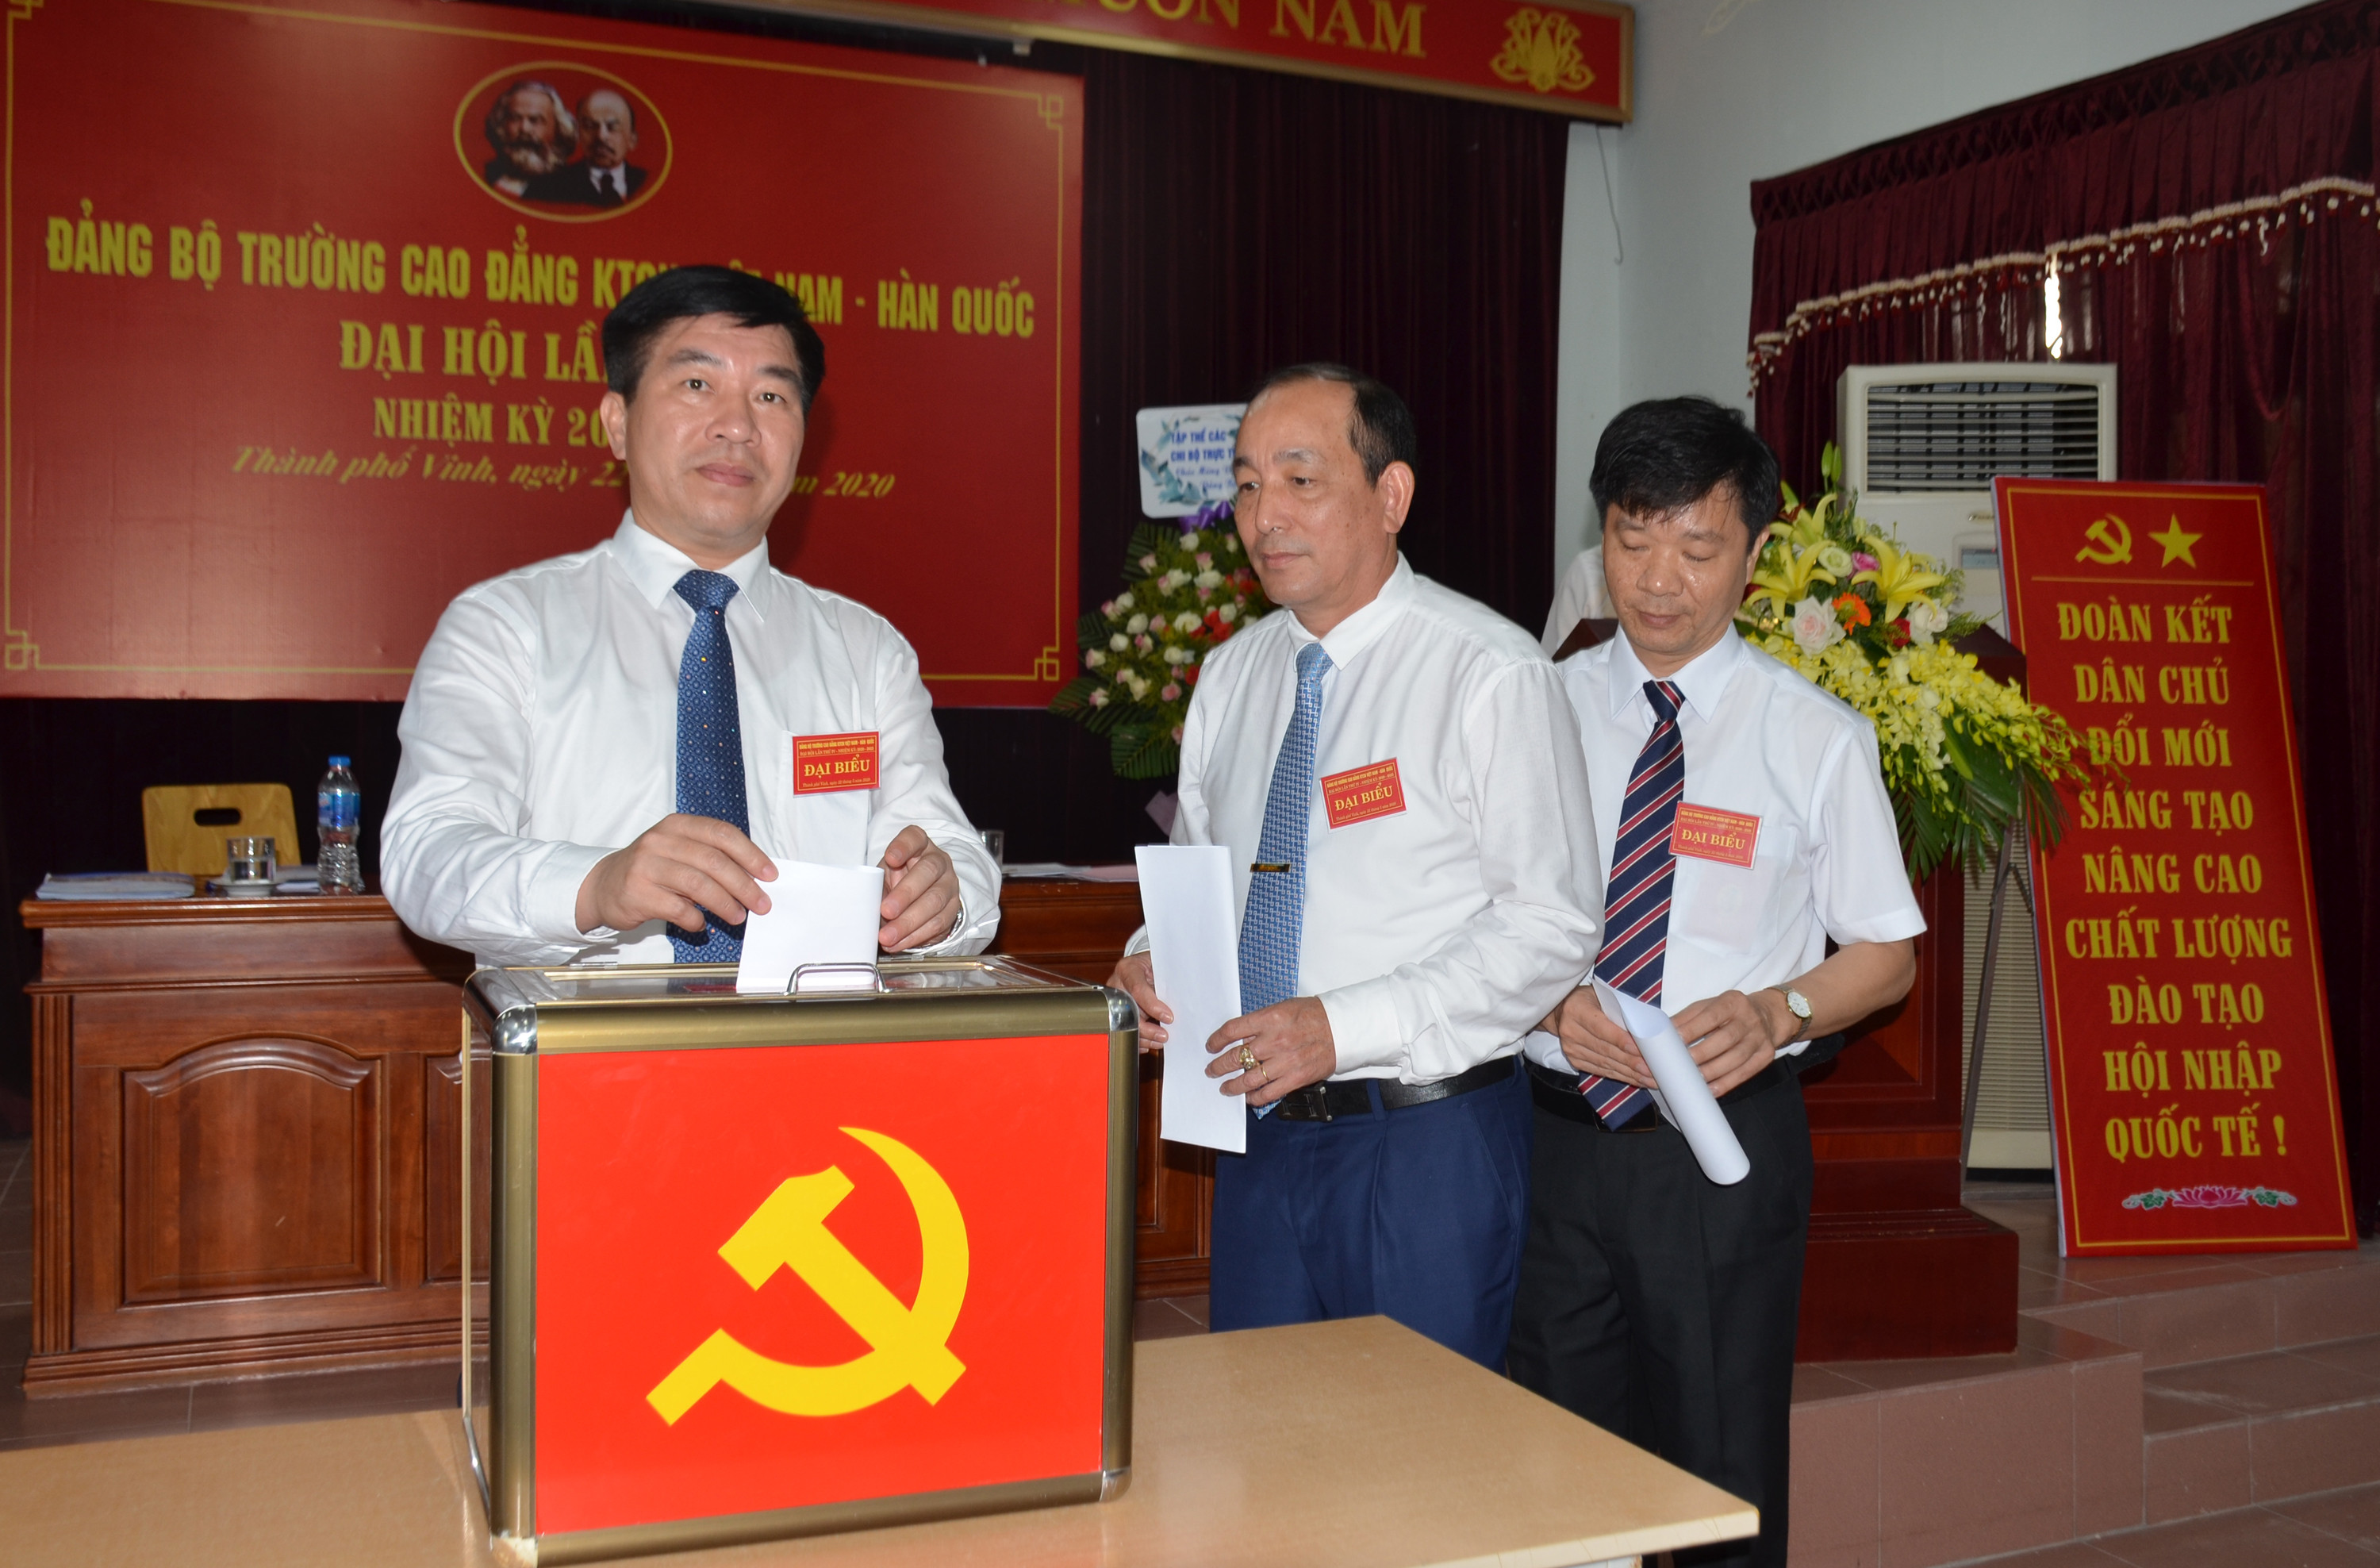 Đại hội Đảng bộ Trường Cao đẳng kỹ thuật công nghiệp Việt Nam - Hàn Quốc